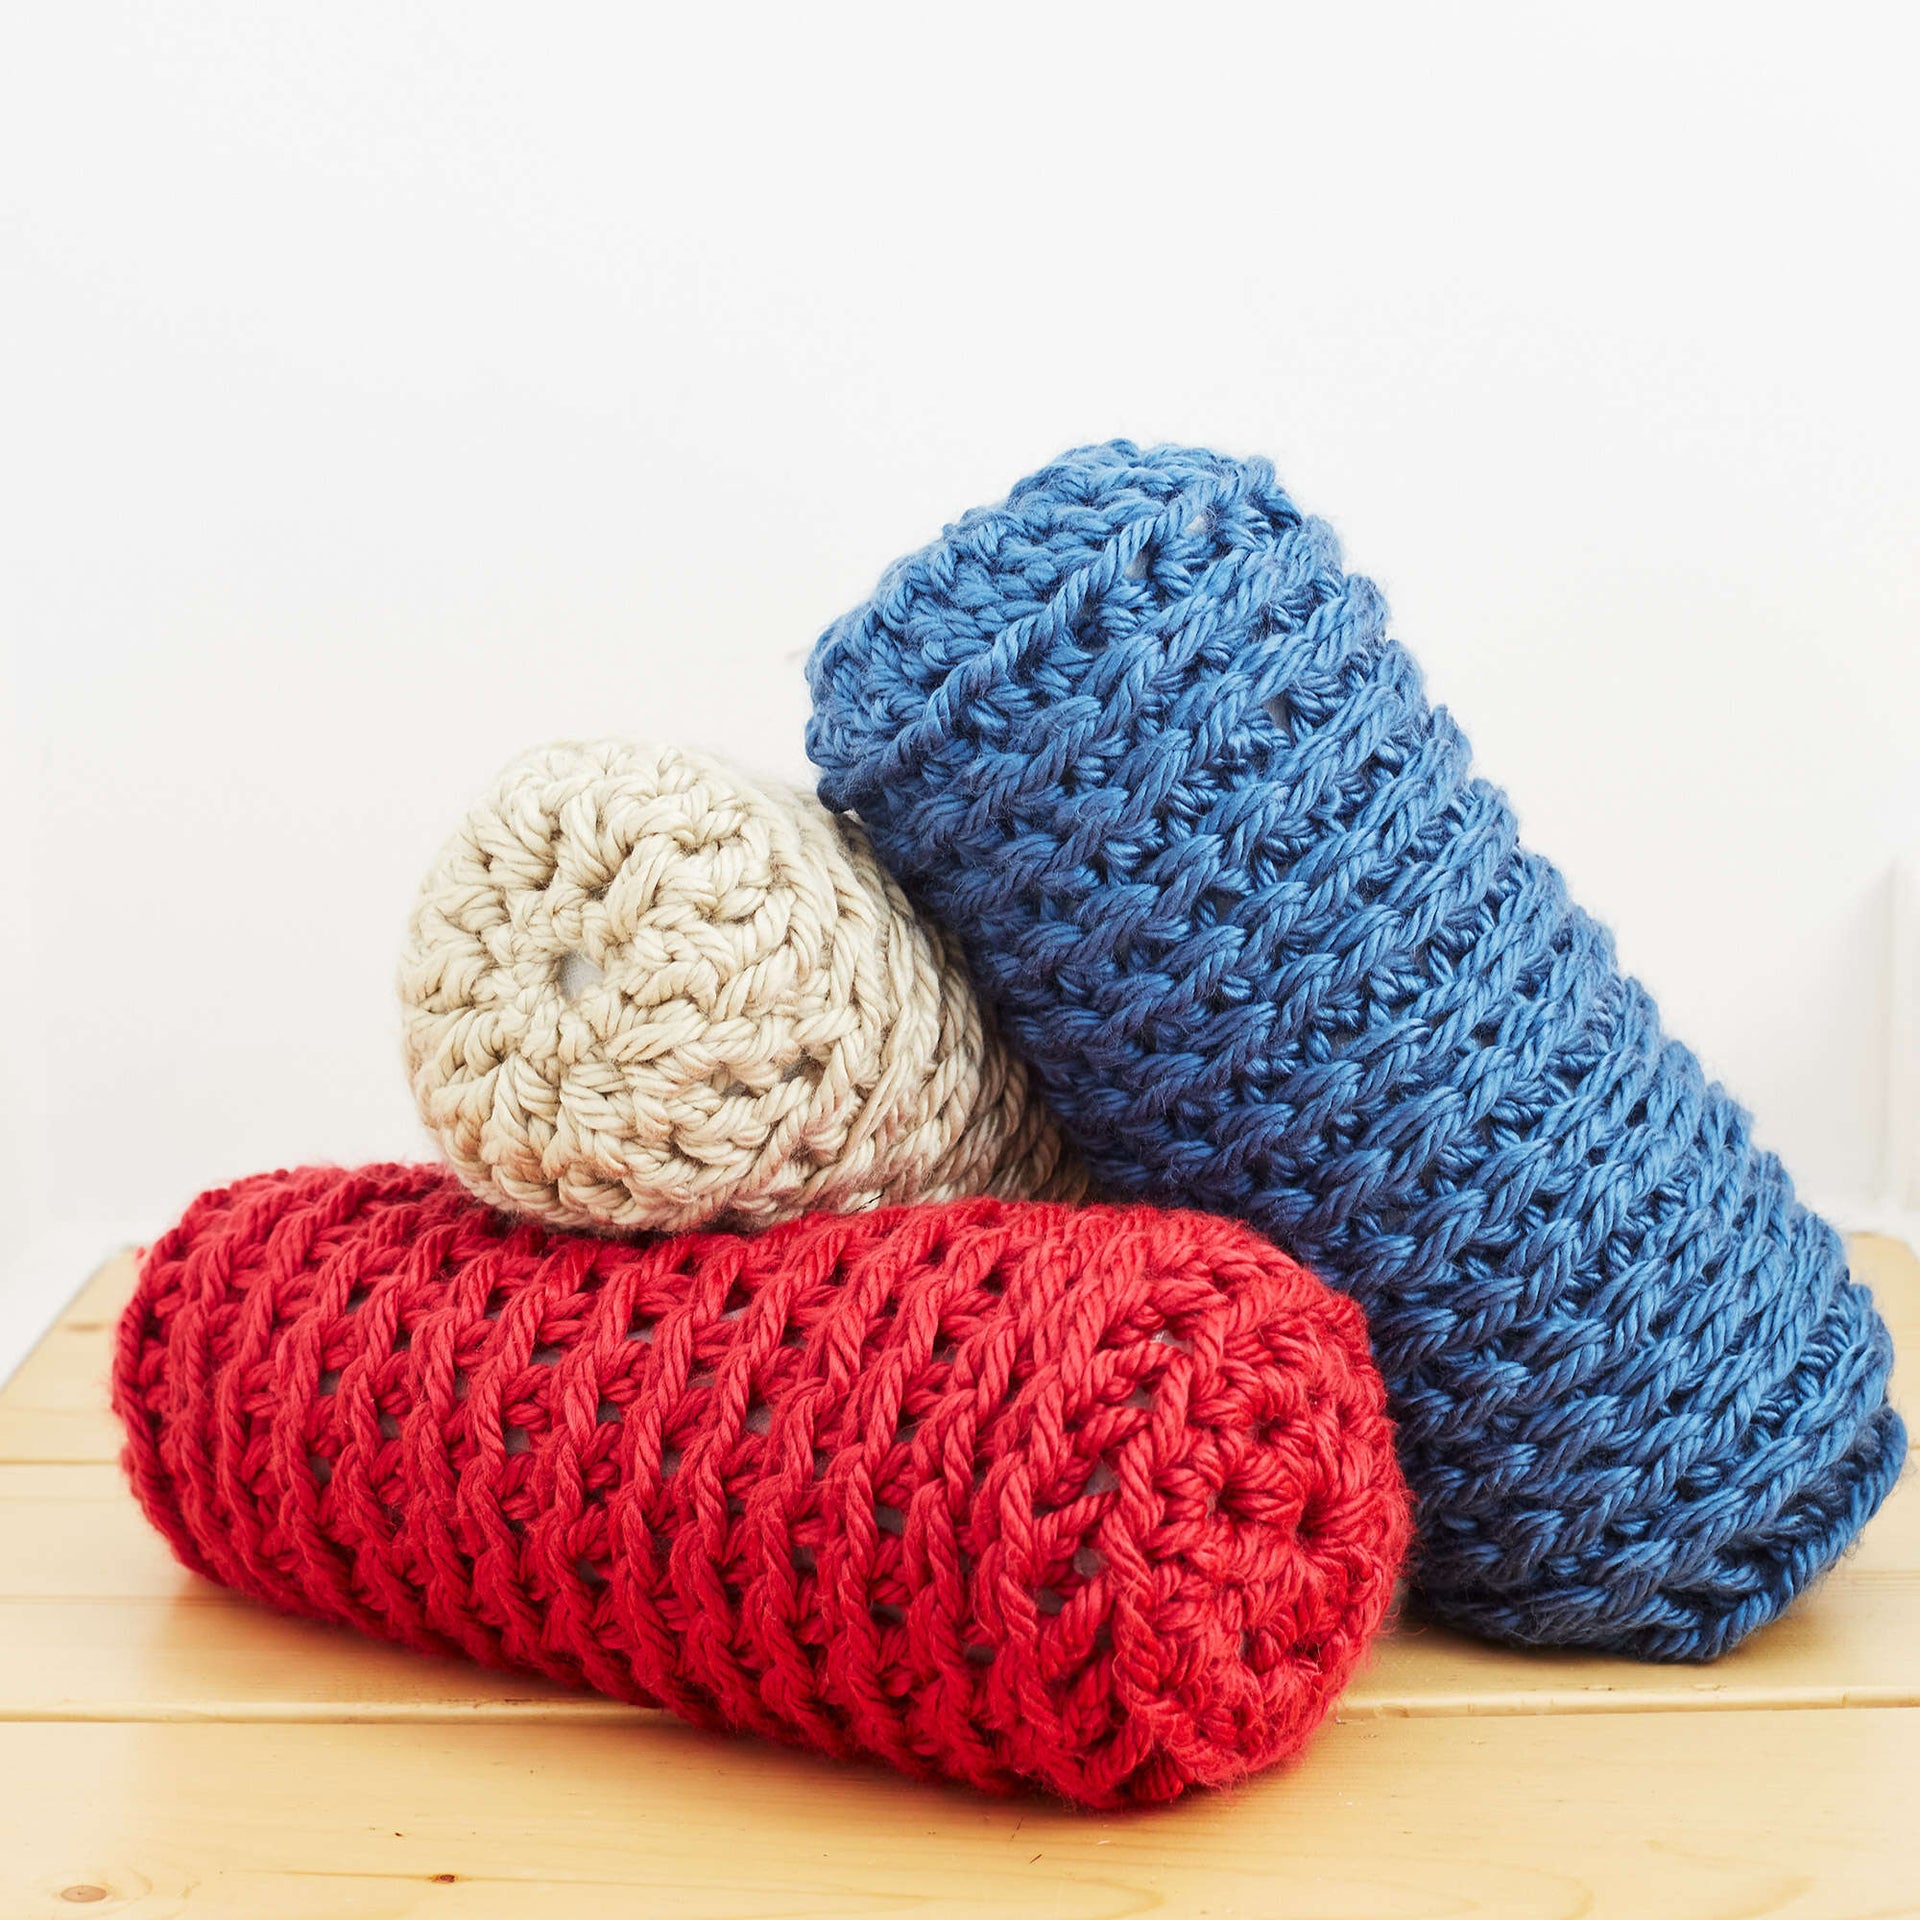 Neck support pillow crochet pattern